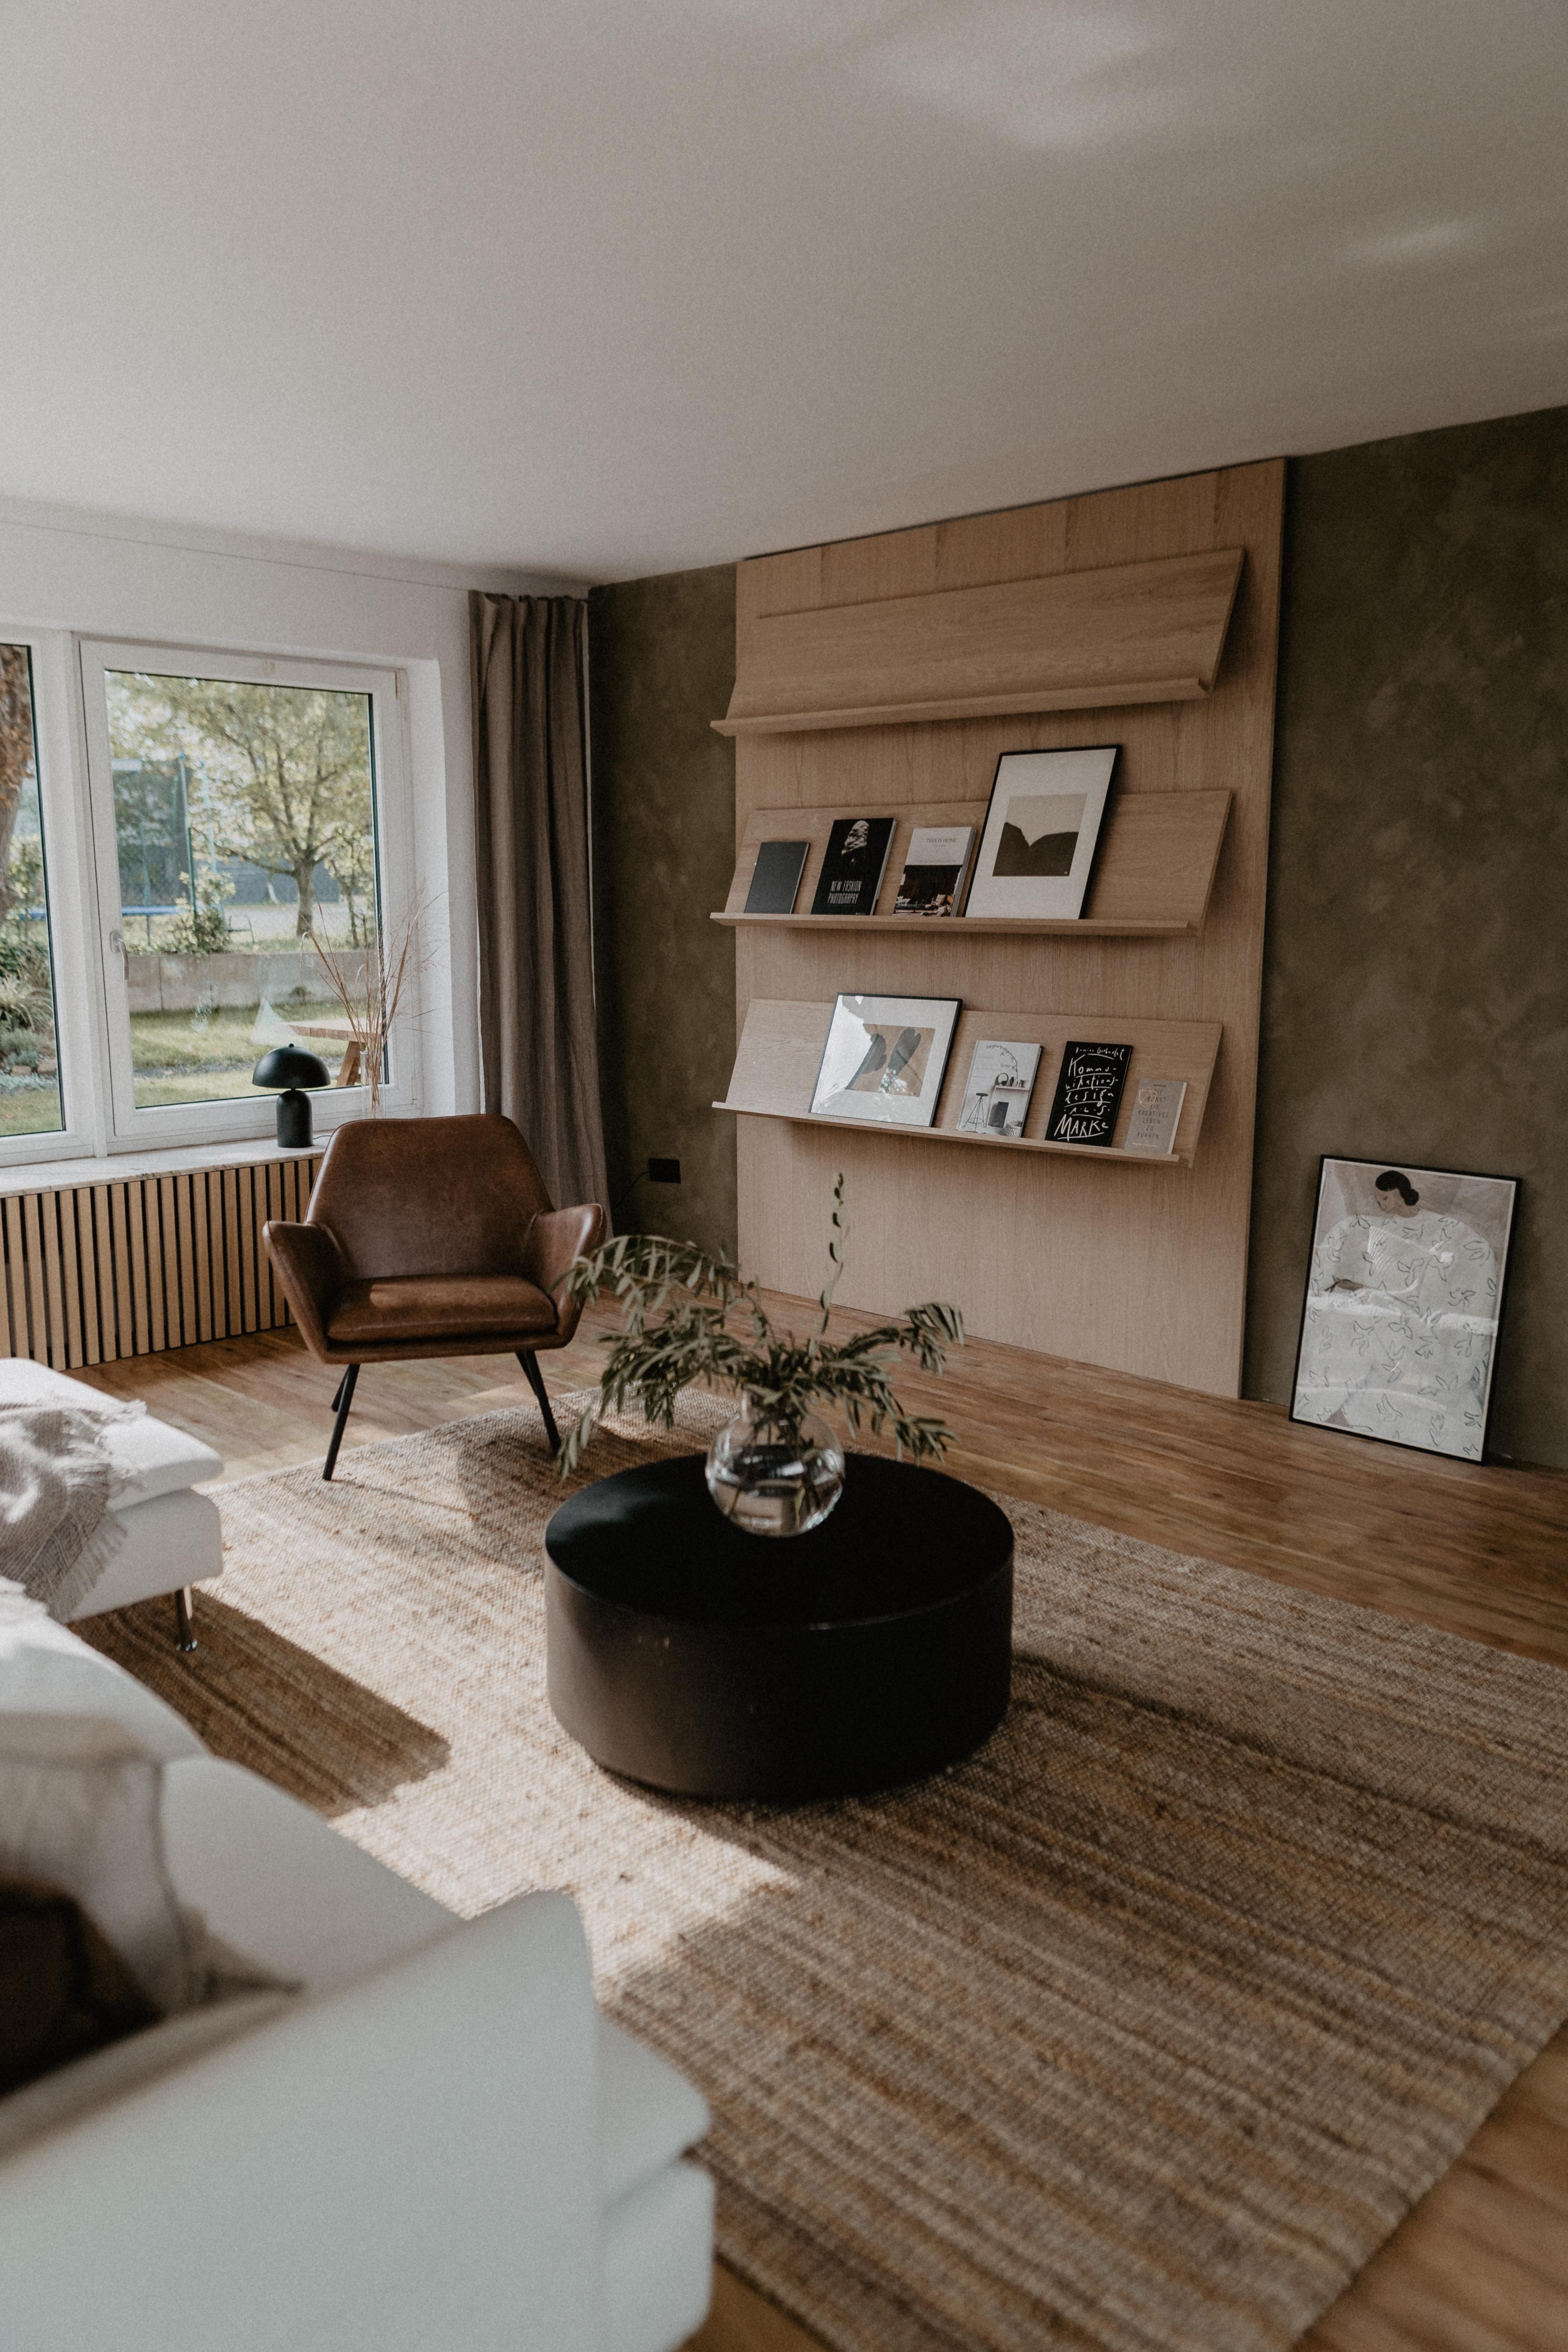 Renovierung ist abgeschlossen ☺️ #wohnzimmer #diy #renovierung #farbe #olive #interior #70s #interiordesign